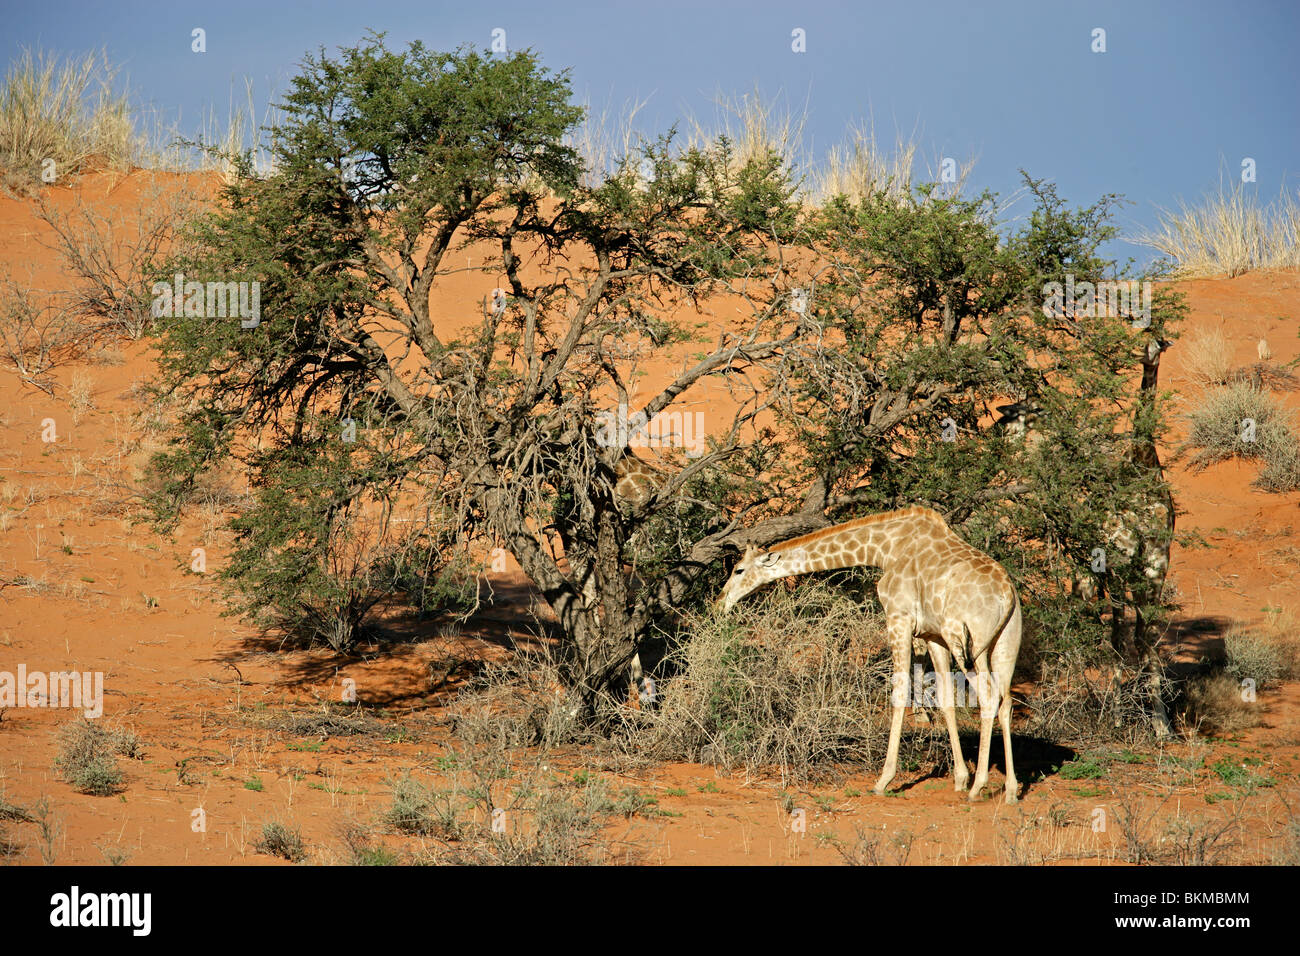 Une Girafe (Giraffa camelopardalis) se nourrissent d'une camel thorn Acacia, Kgalagadi Transfrontier Park, Afrique du Sud Banque D'Images